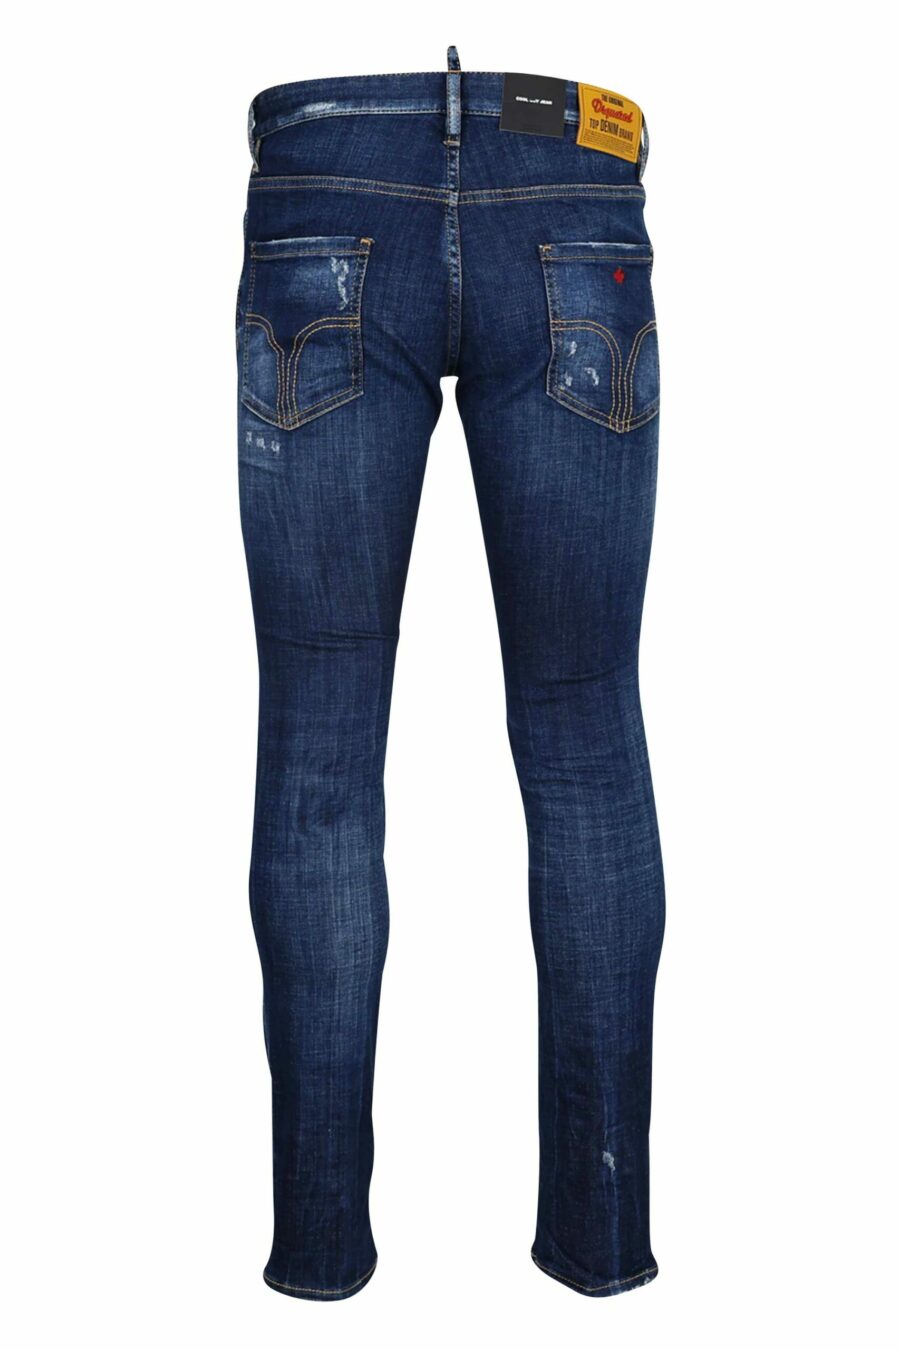 Blaue "Cool Guy"-Jeans mit Abnutzungsspuren - 8054148102005 2 skaliert